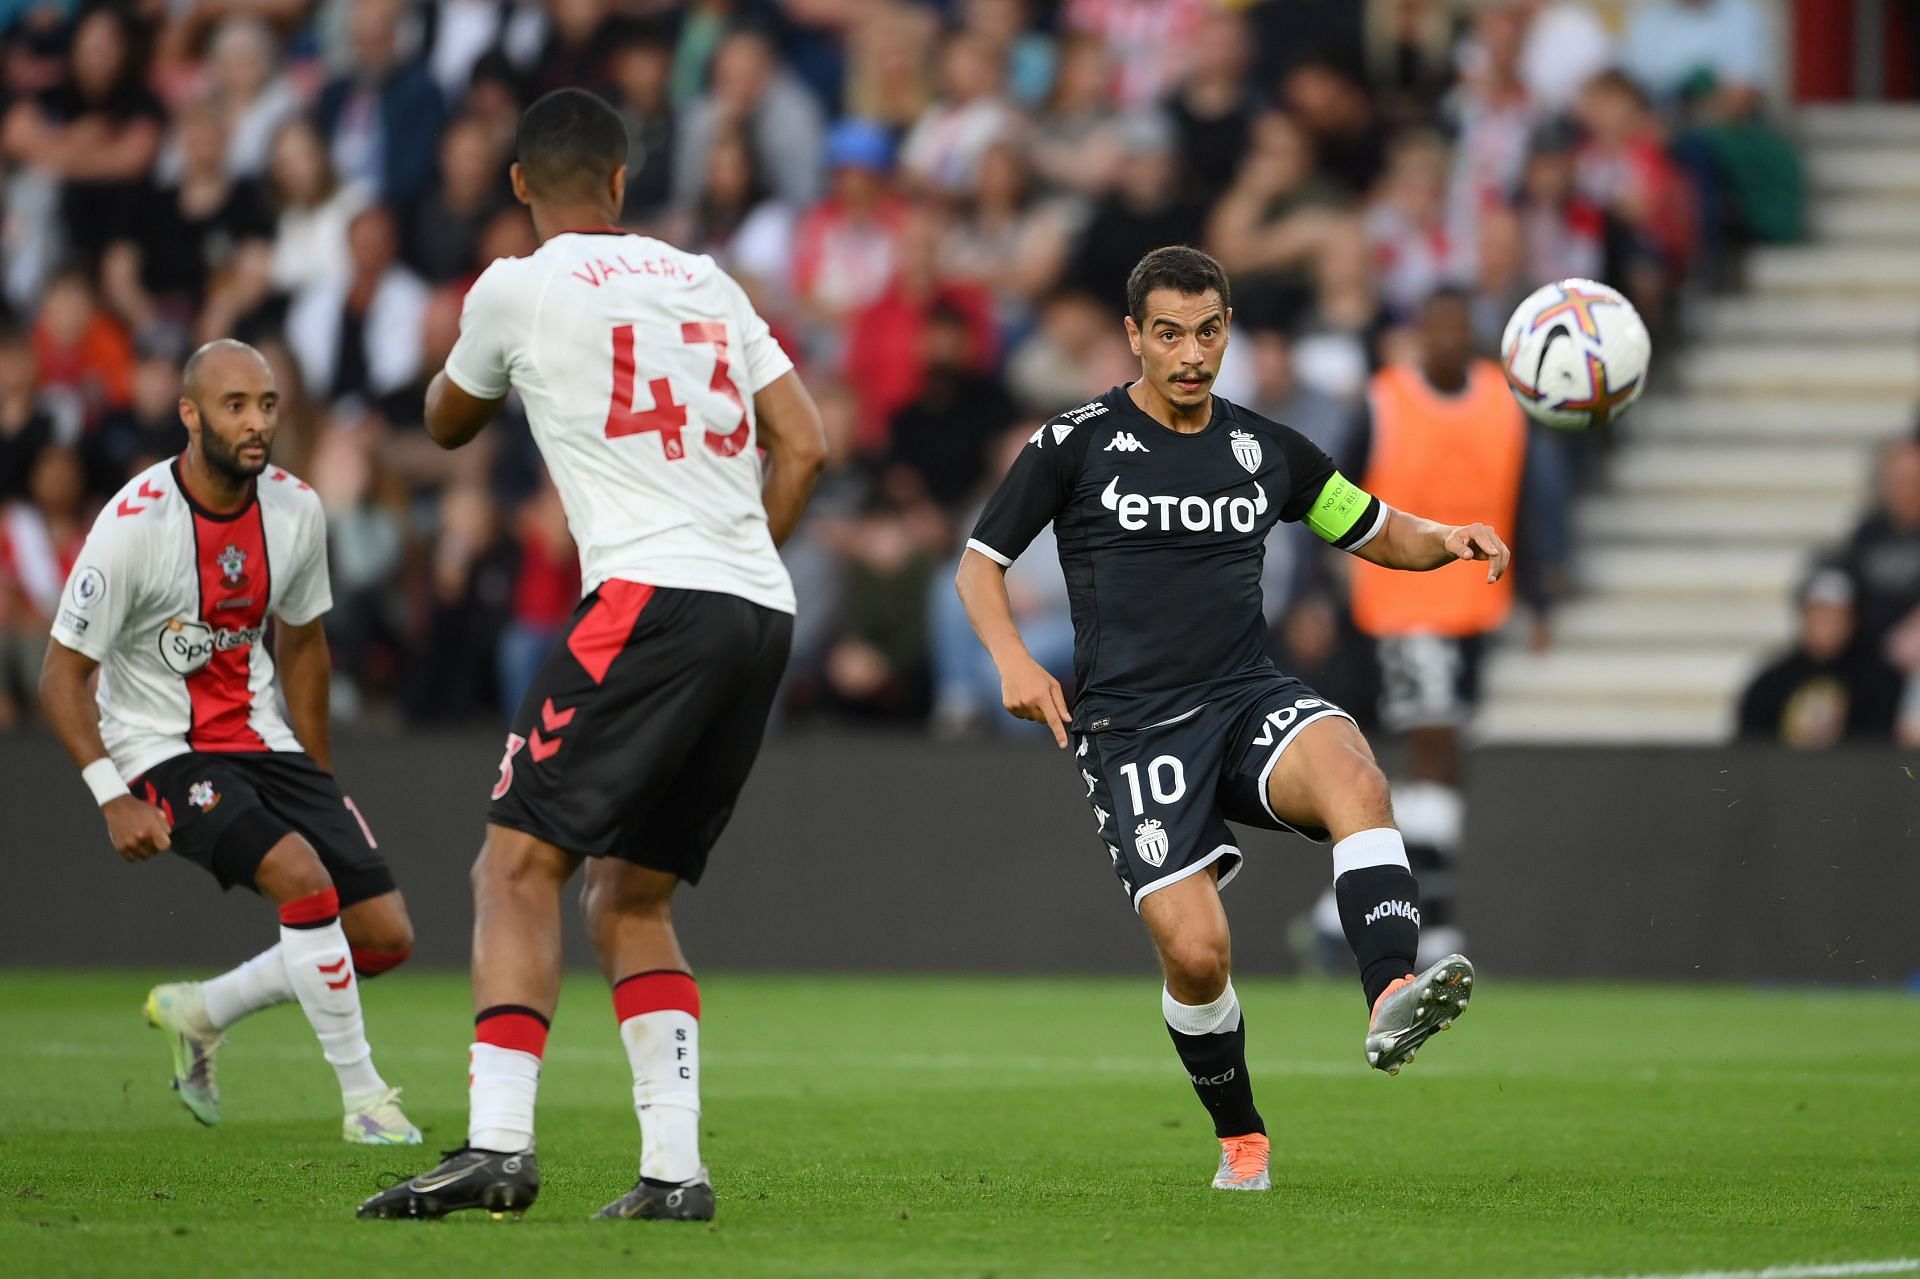 Southampton - AS Monaco - Pre-Season Friendly